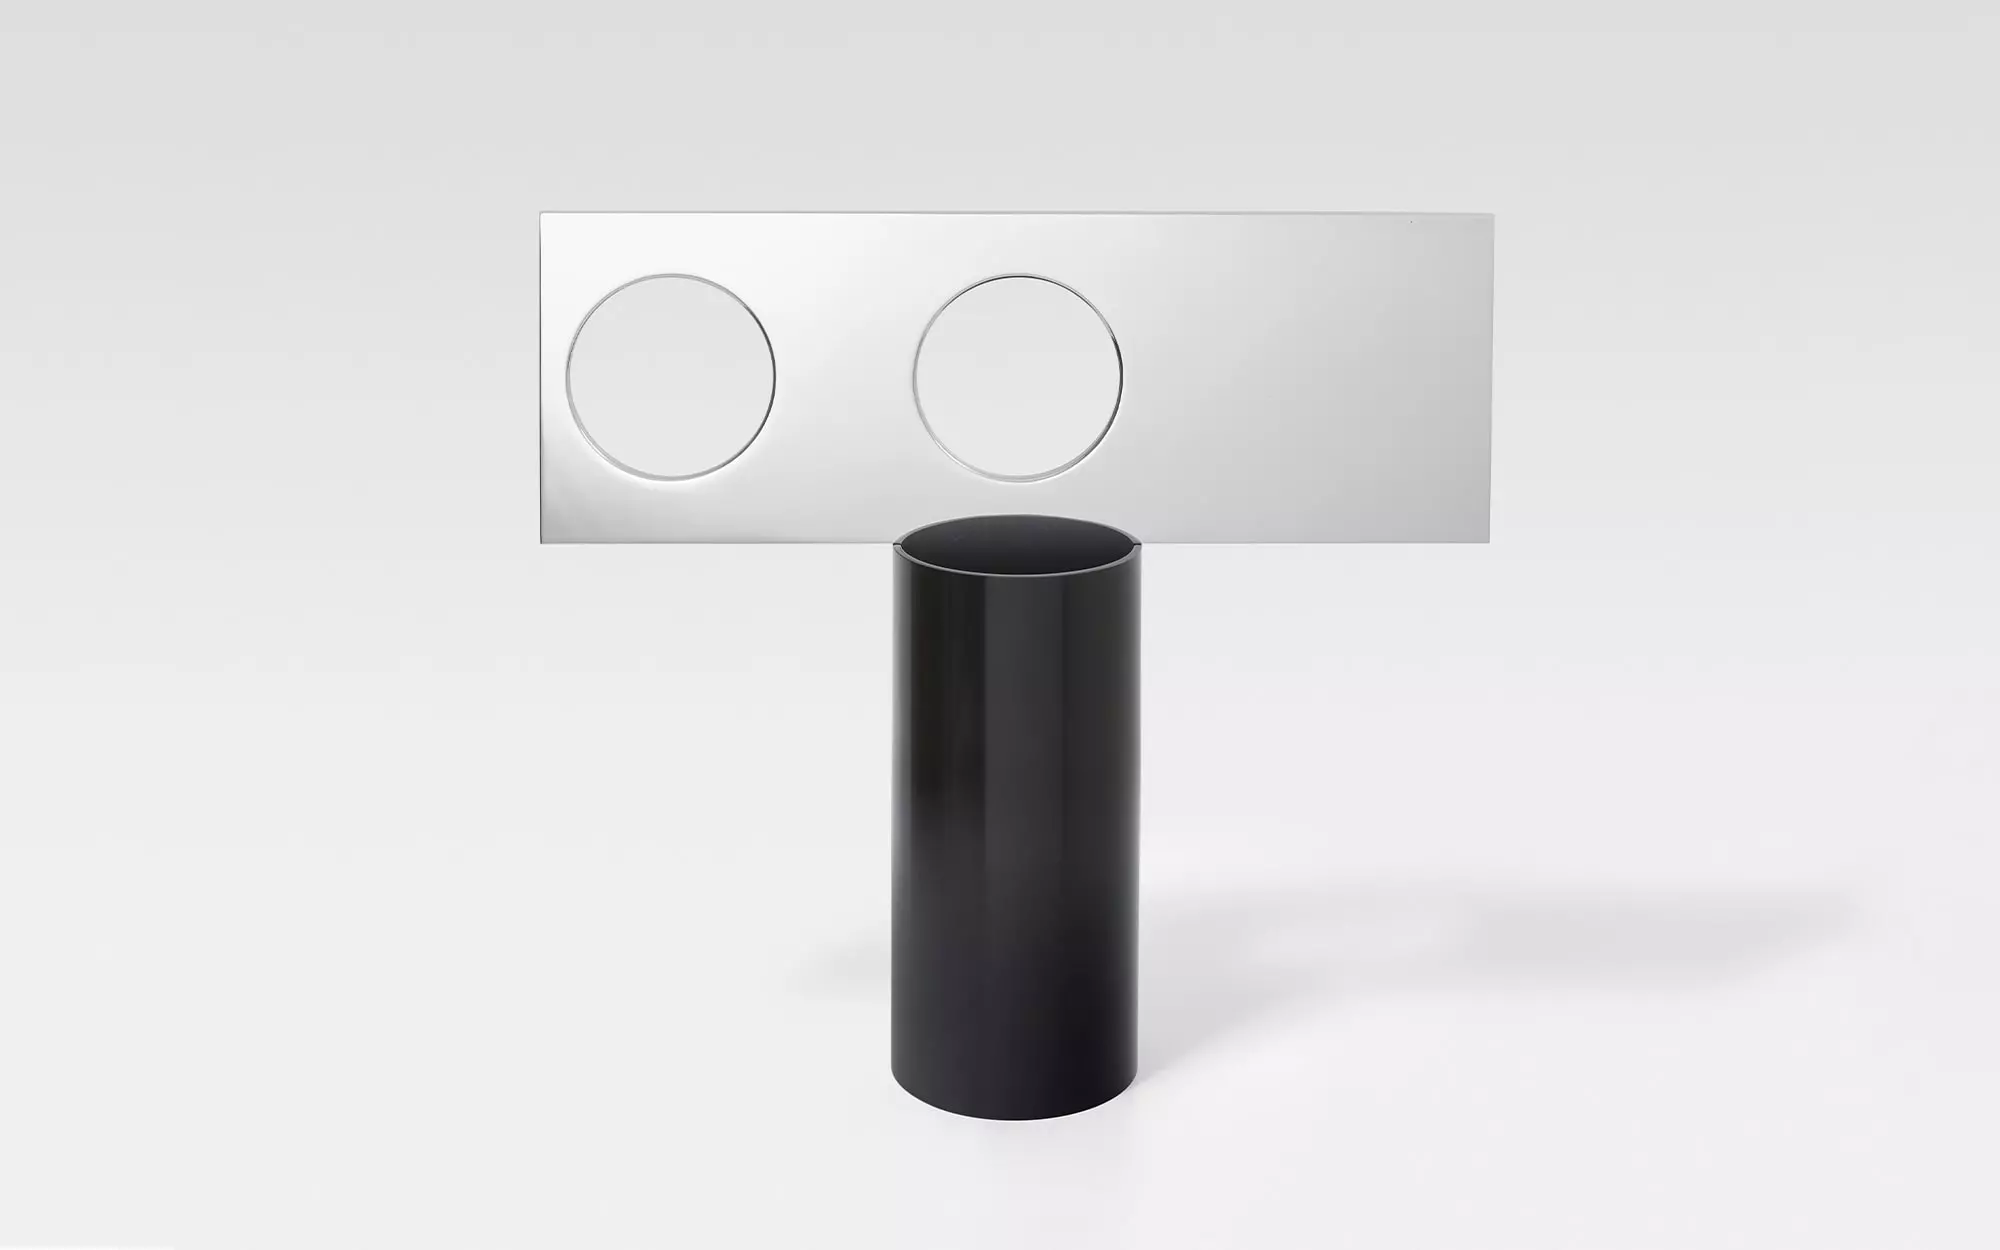 Lunettes - 3 Vase - Pierre Charpin - Table light - Galerie kreo